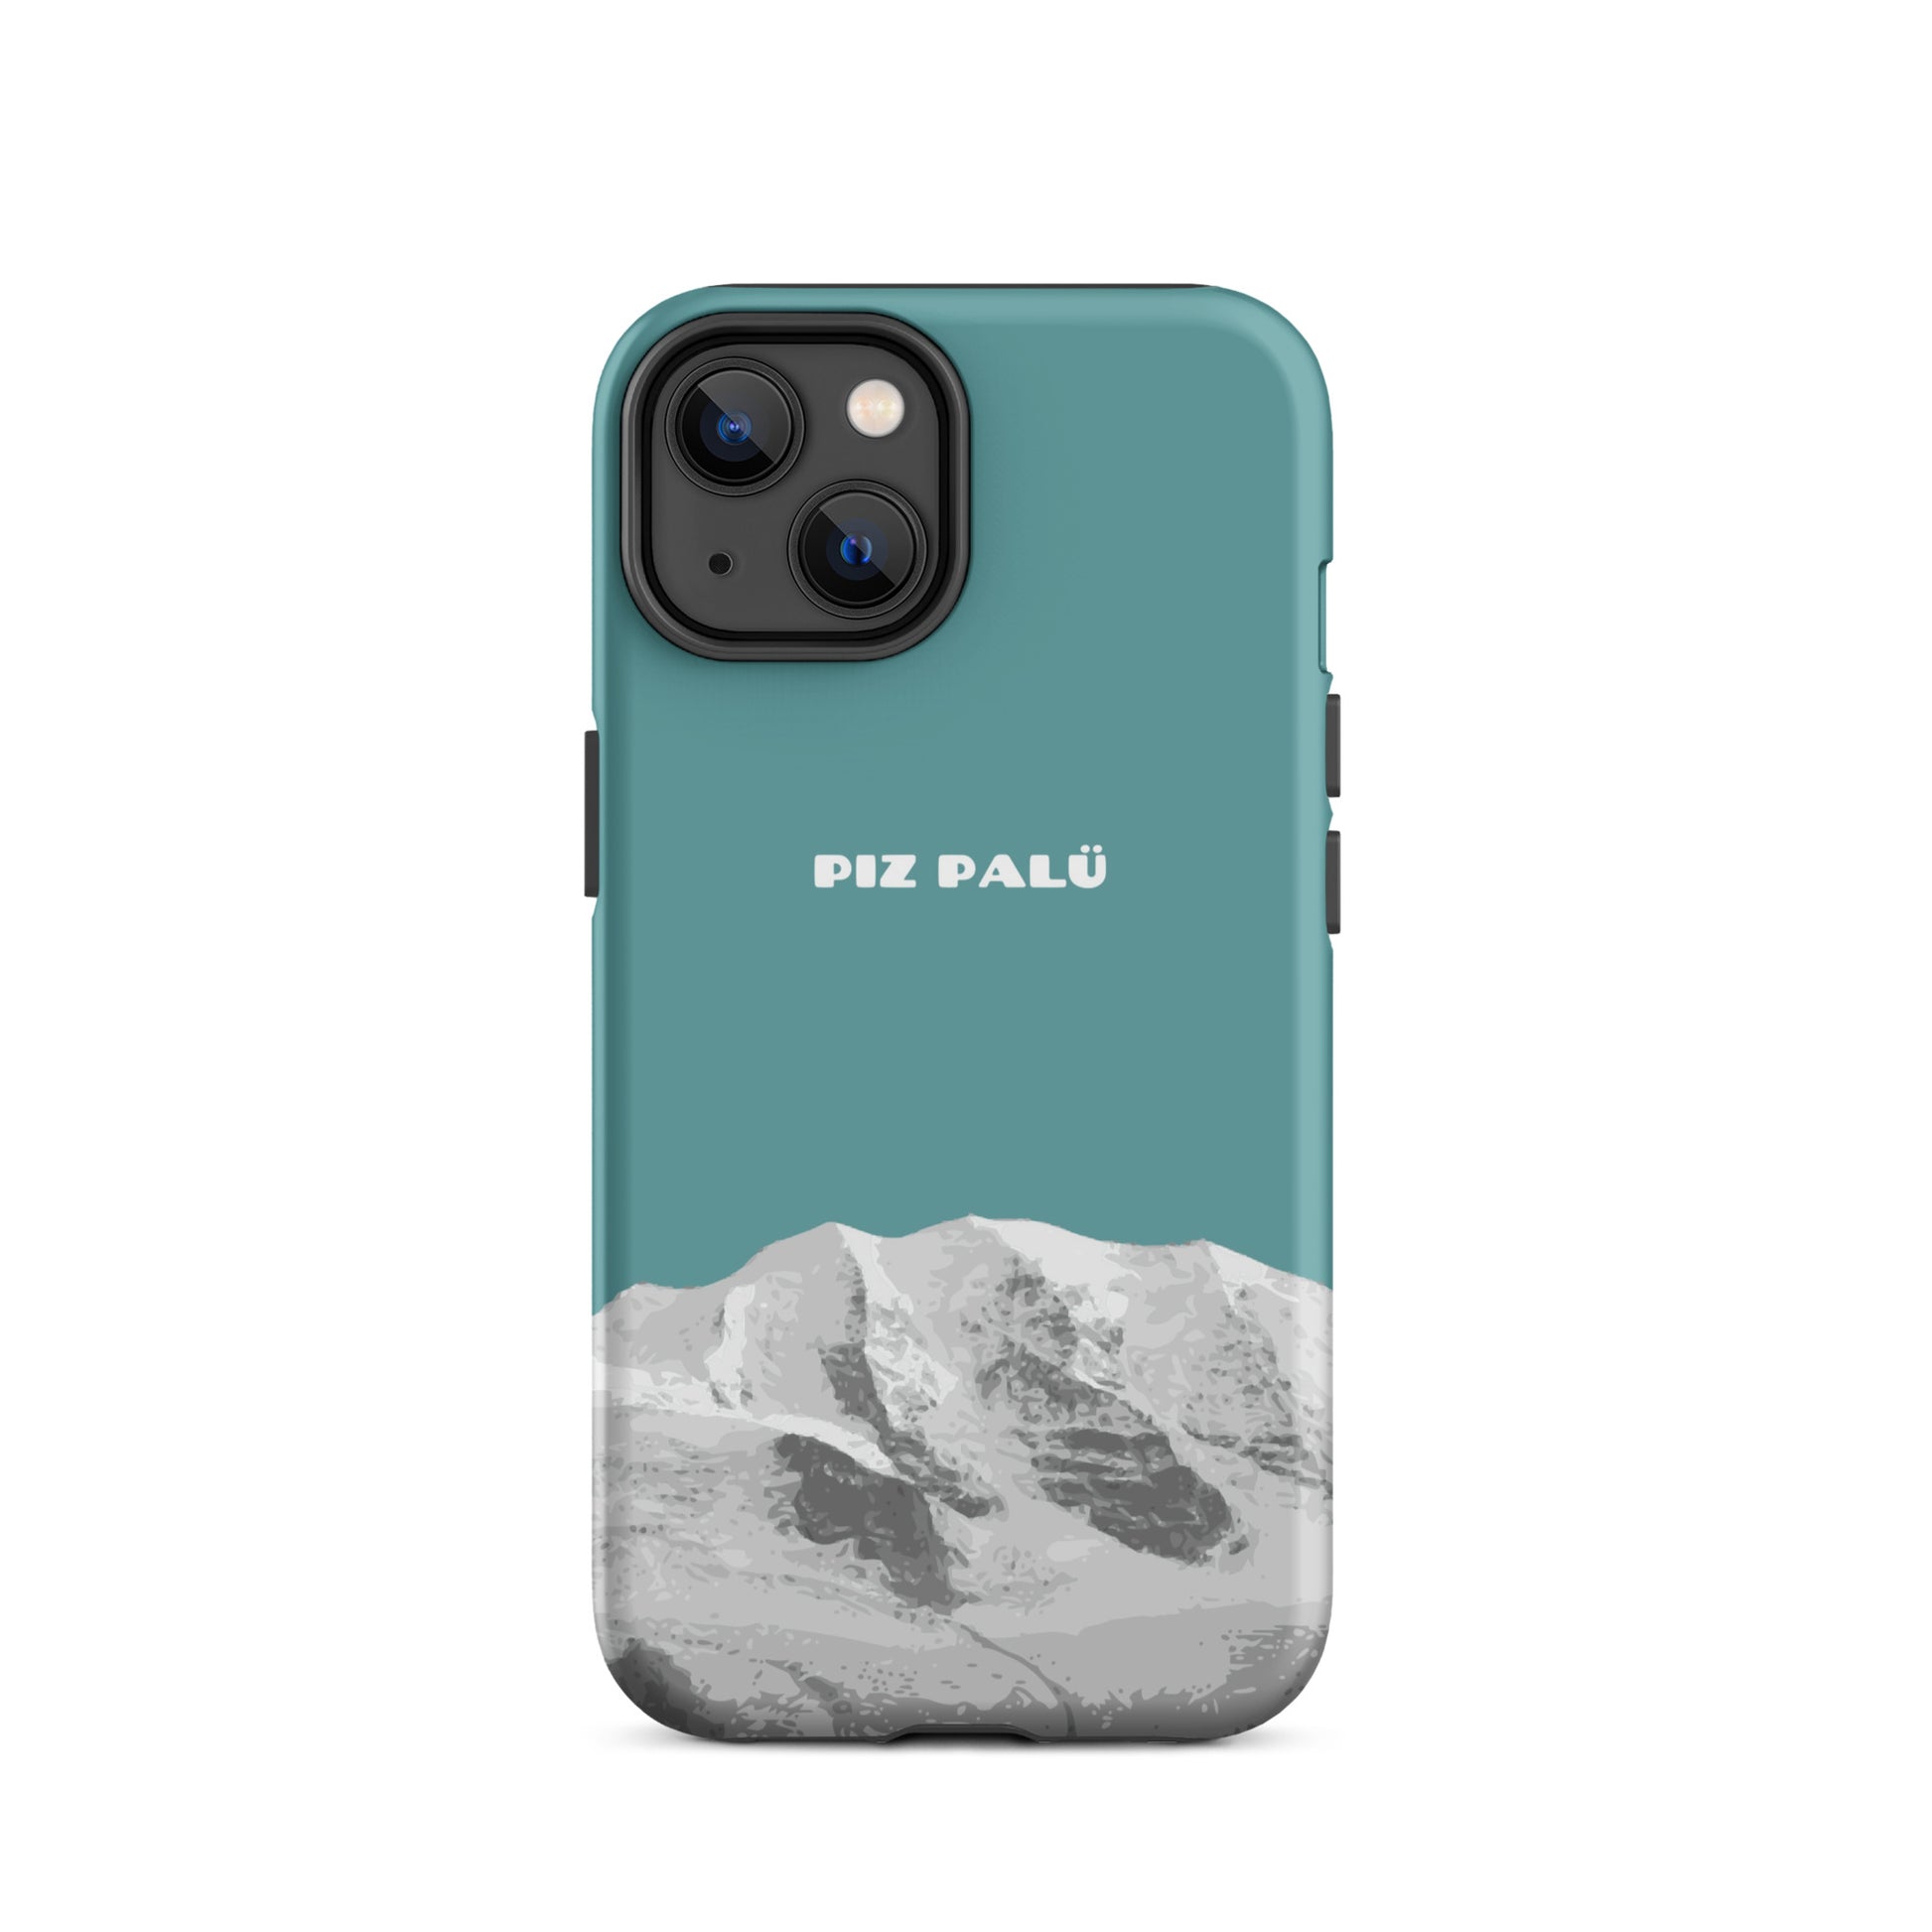 Hülle für das iPhone 14 von Apple in der Farbe Kadettenblau, dass den Piz Palü in Graubünden zeigt.